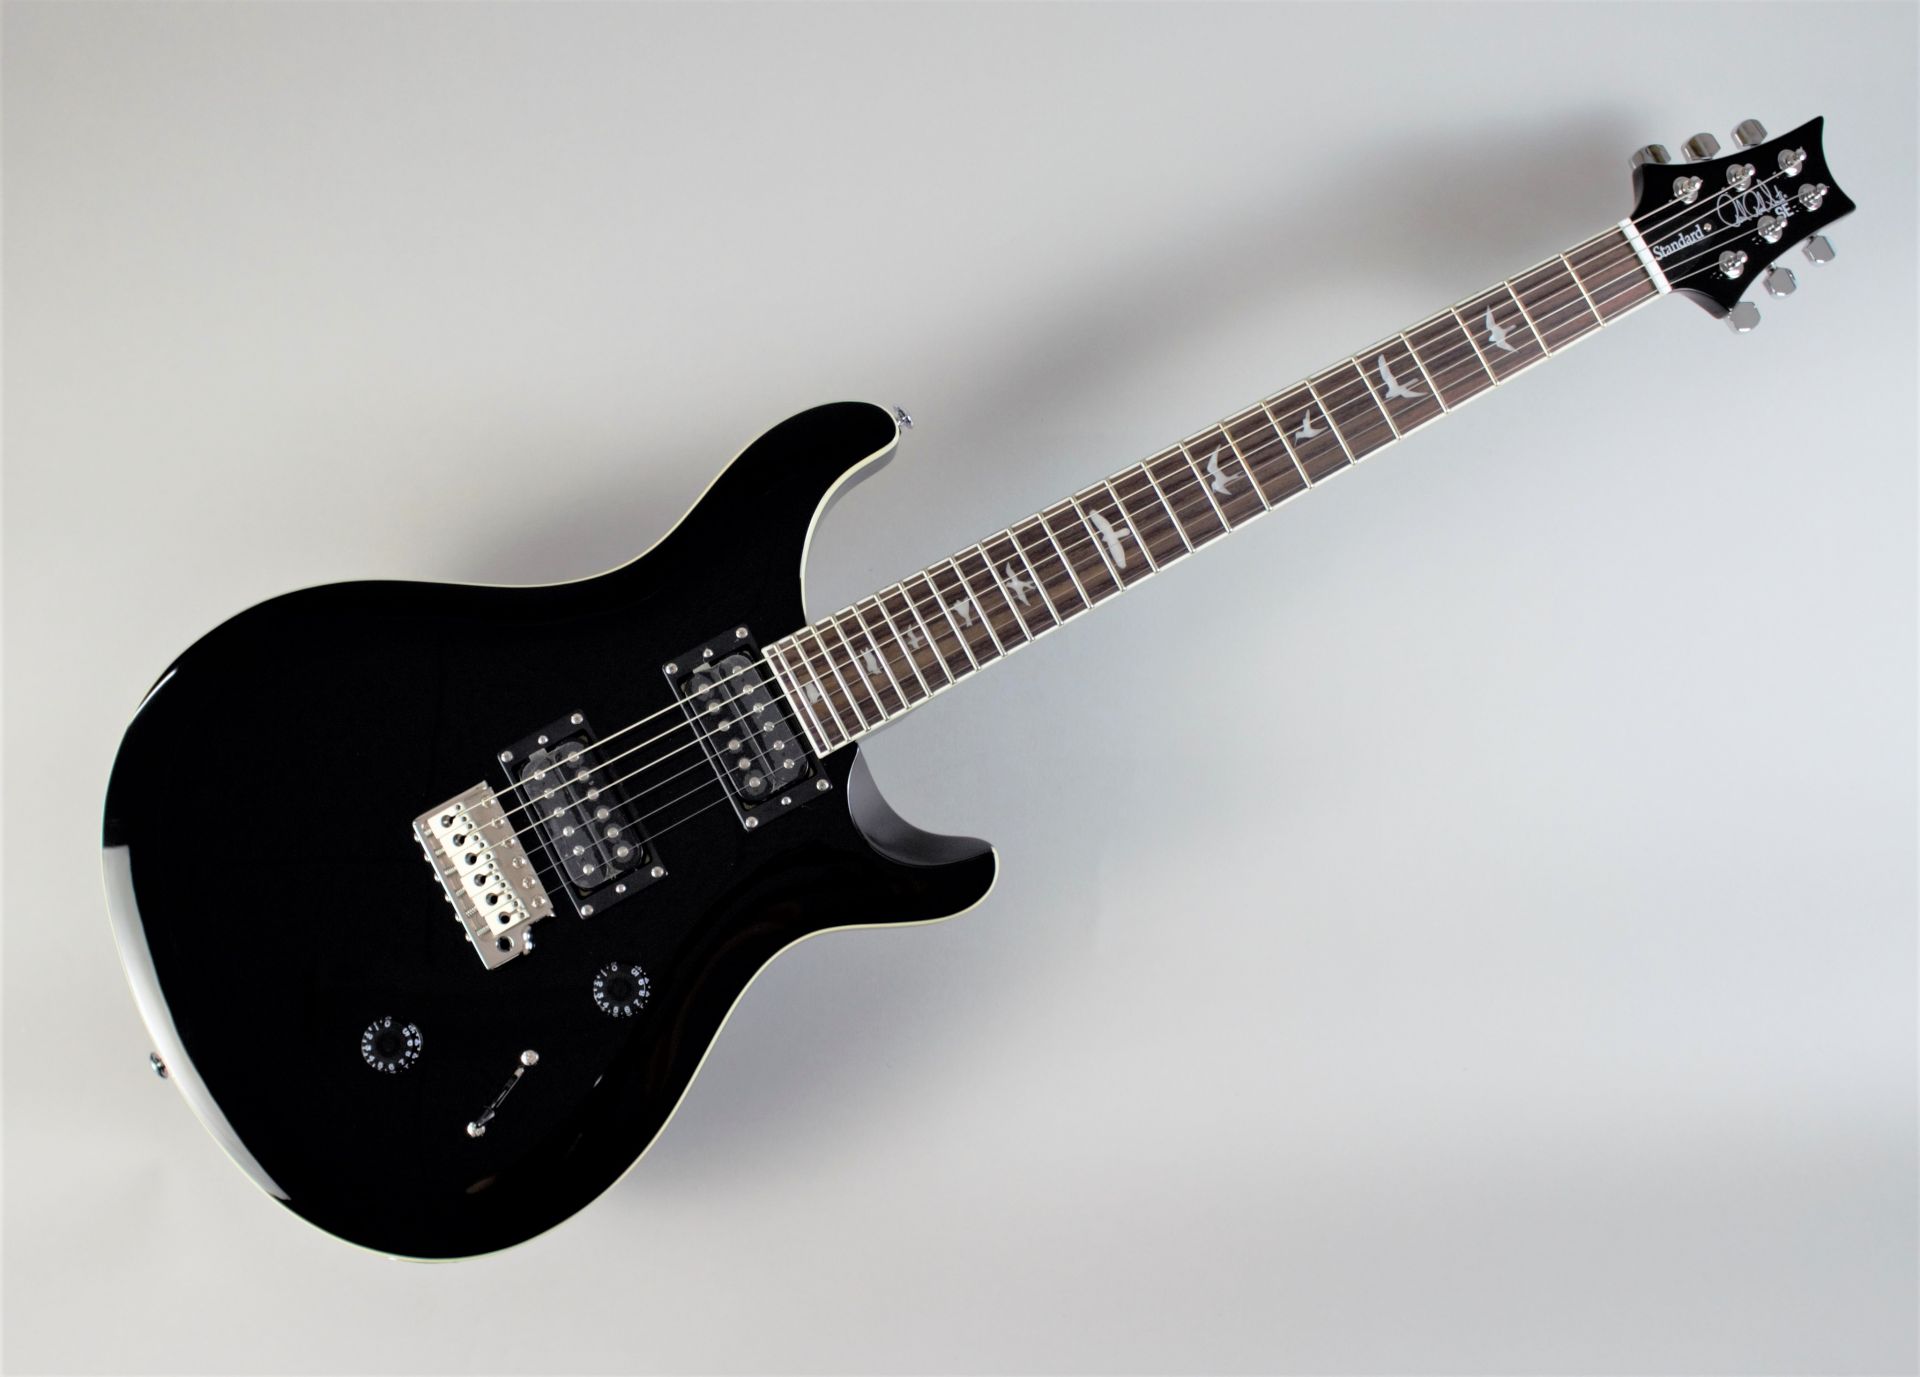 *入荷致しました！精悍なBLACKカラーを身にまとったSE Standard 24 「初めてのギター」にも「“これぞ”の1本」にも最適なギター「PRS SE Standard 24」 今回このオリジナルカラーを採用した島村楽器オーダーモデルが発売します。 - PRS STANDARD 24シリーズを […]